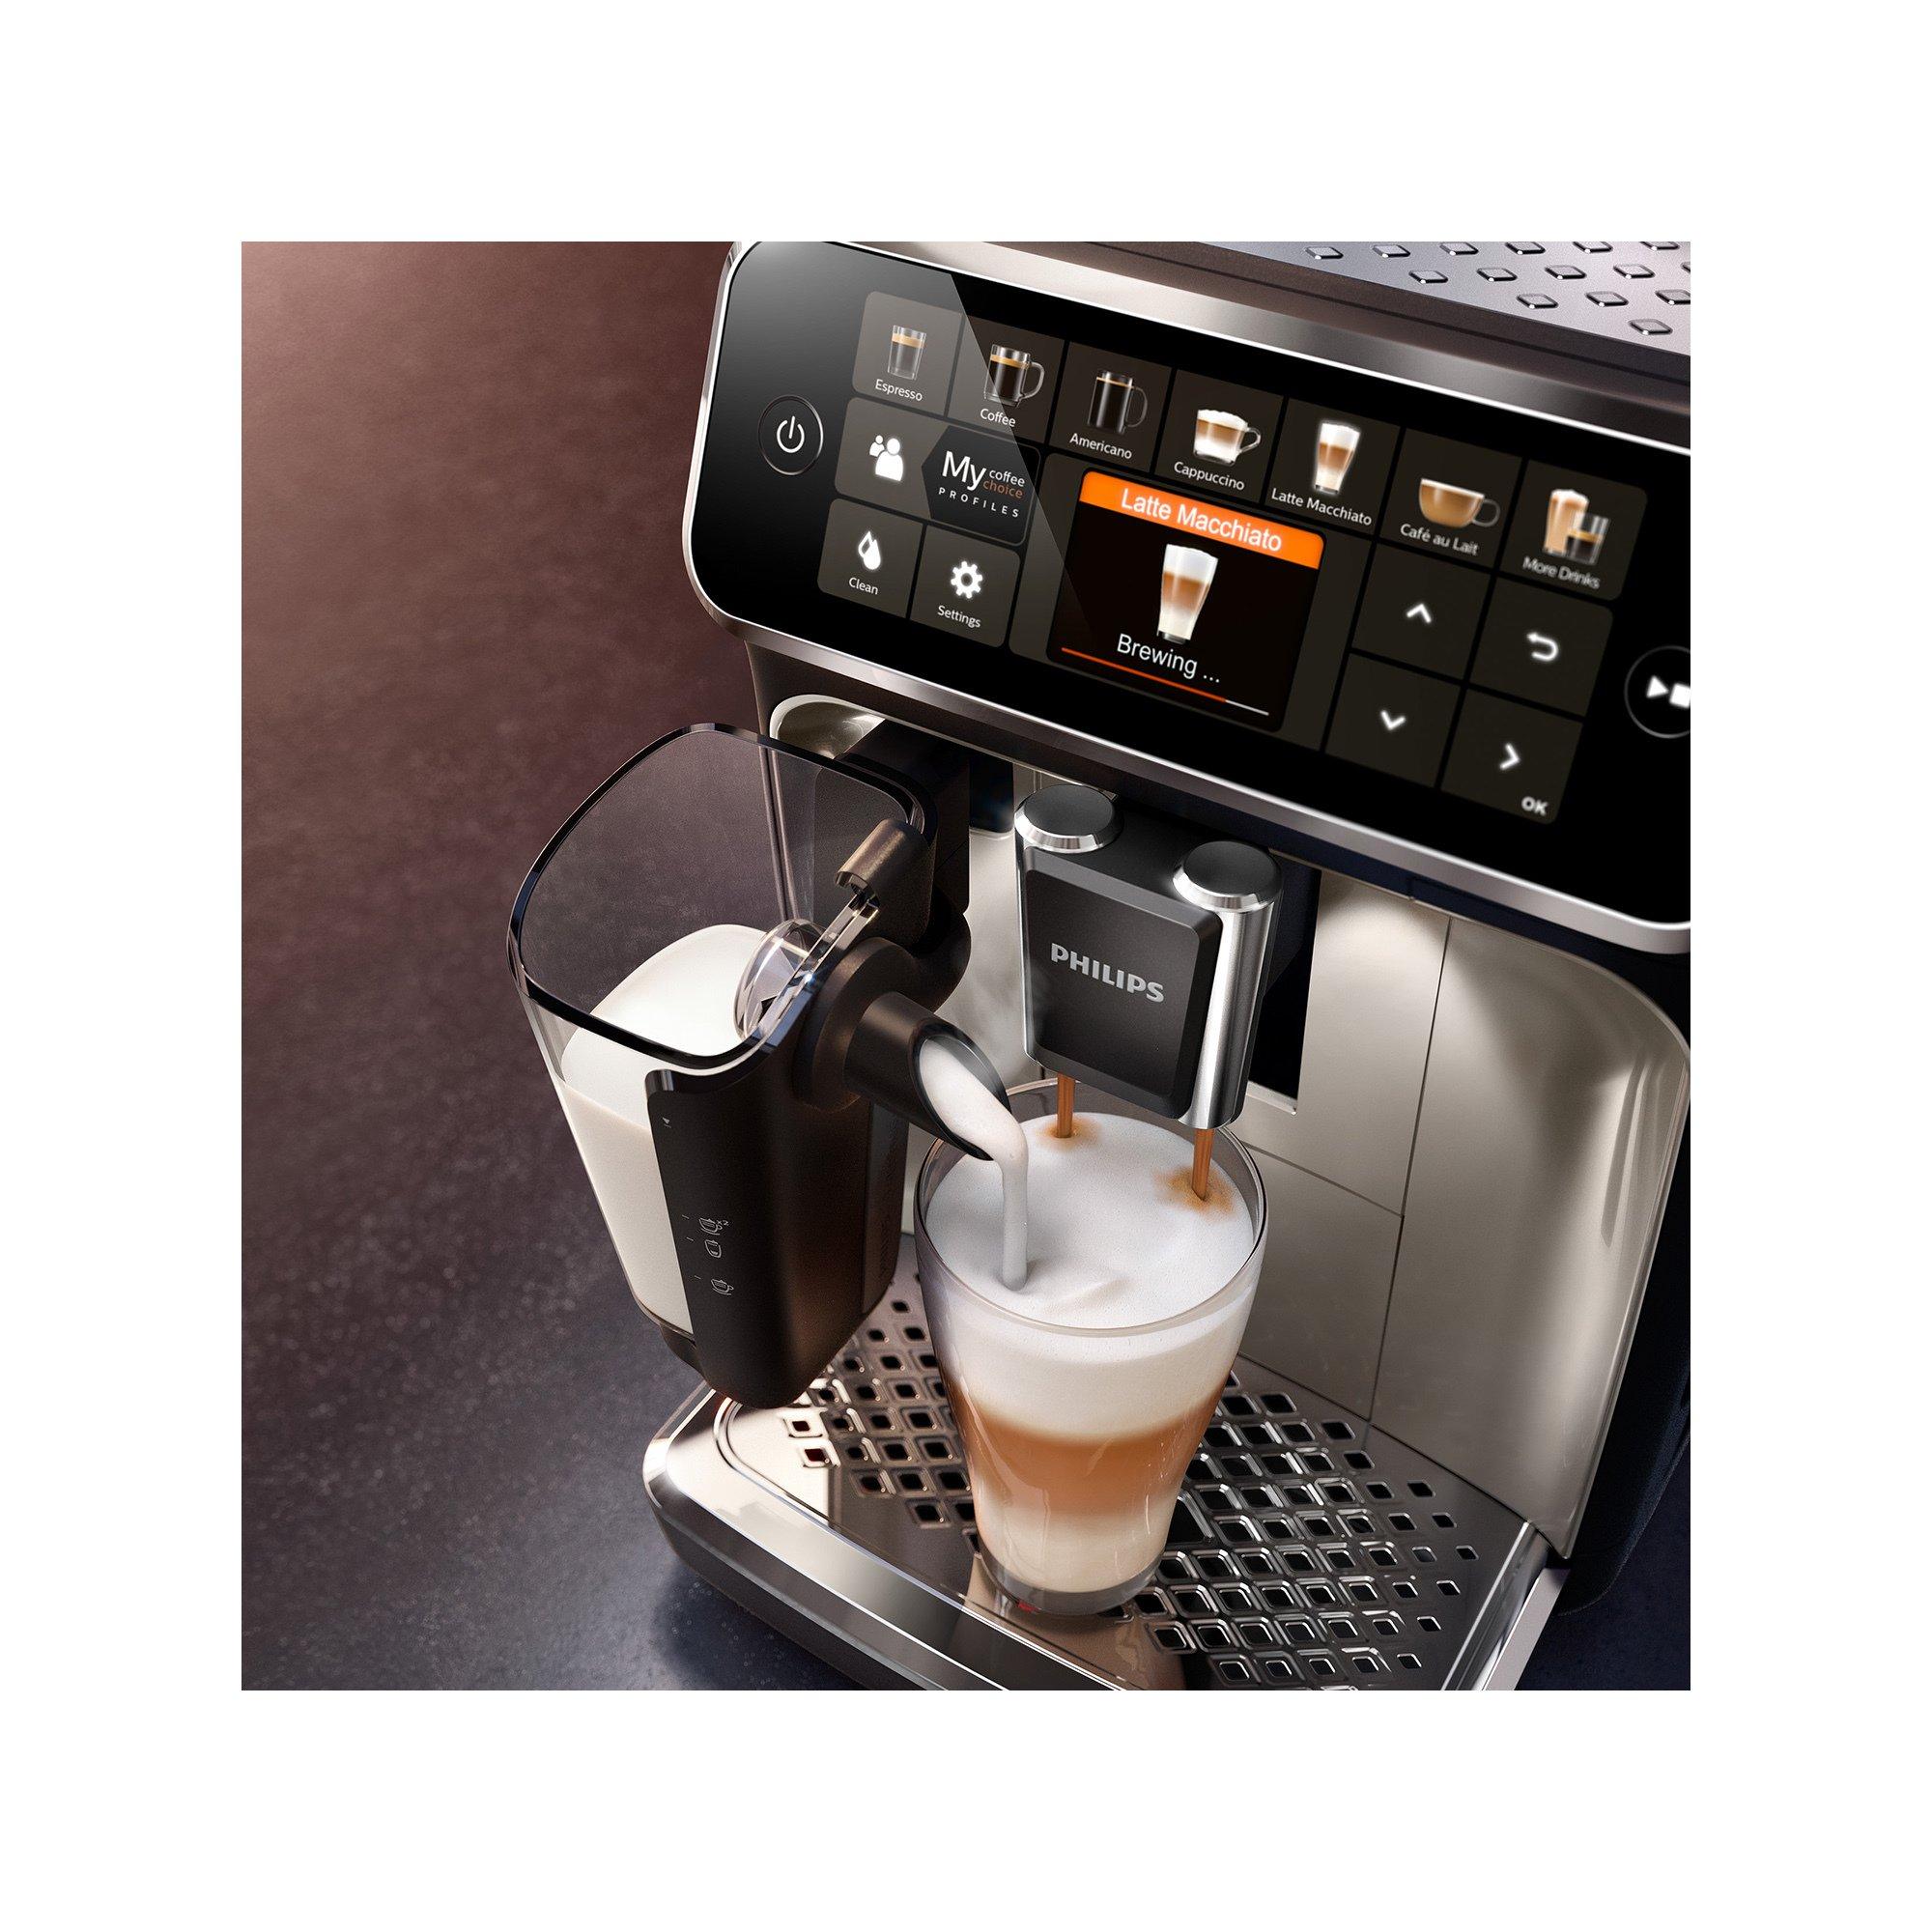 PHILIPS Machine à café automatique Series 5400, EP5447/90 